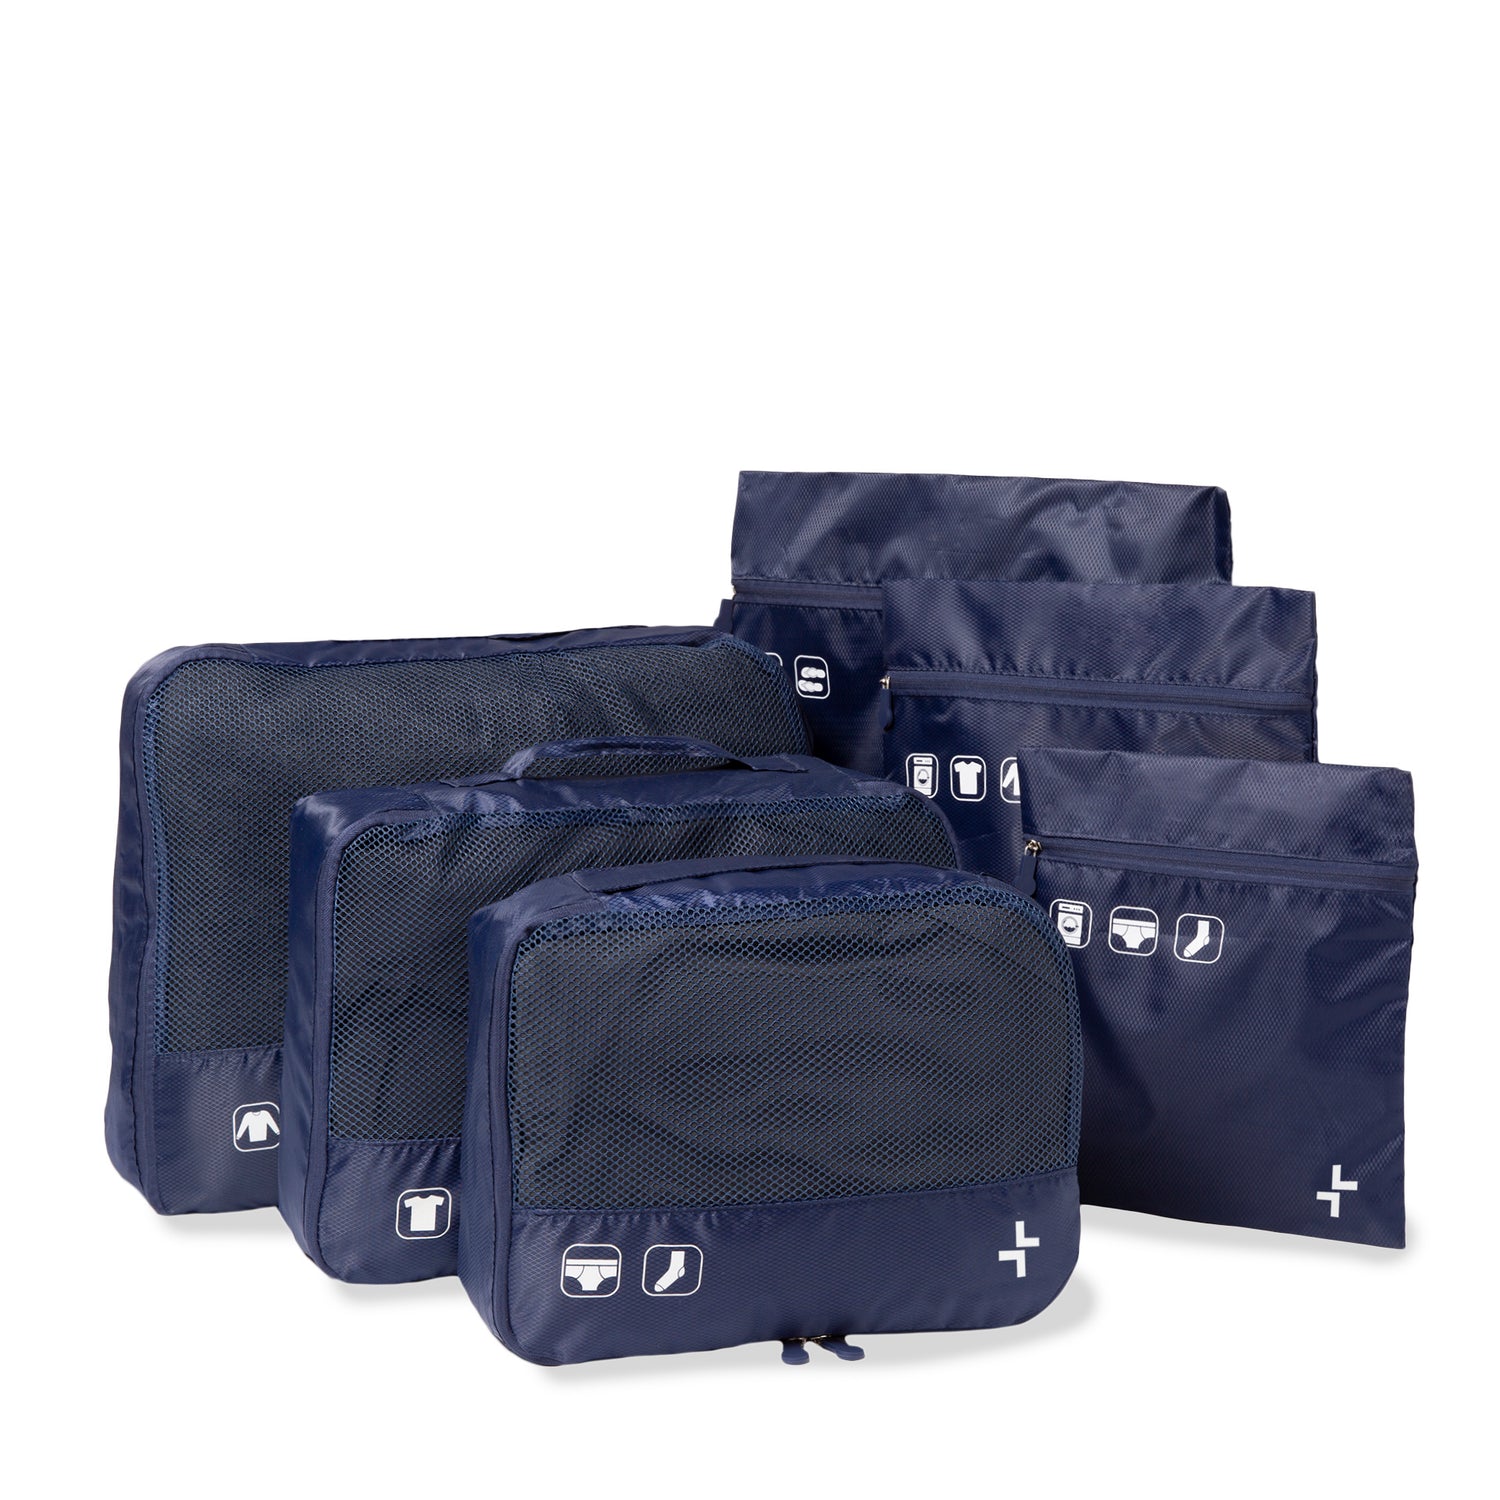 11 Pcs Organisateur Pochette Rangement Valise, Packing Cubes For Travel,  Organisateur De Voyage Pour Vêtements, Chaussures,[